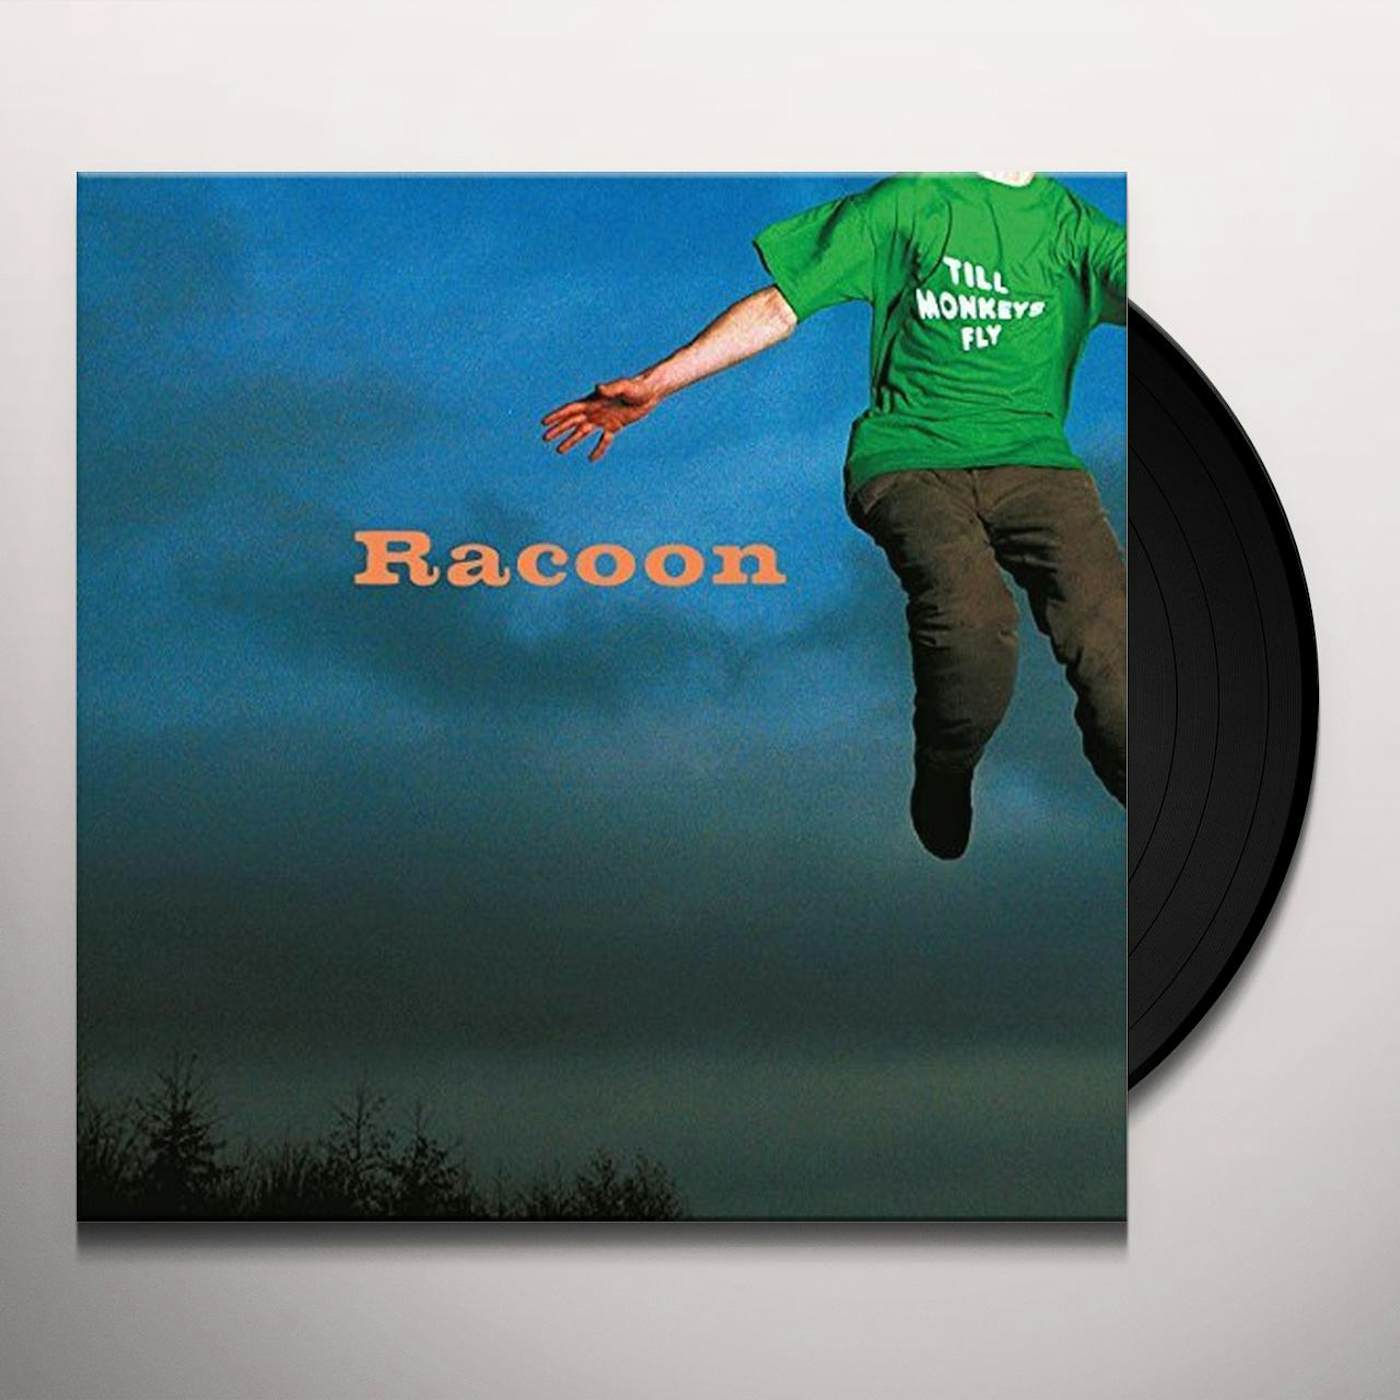 Racoon TILL MONKEYS FLY (LIMITED GREEN VINYL/180G/INSERT) Vinyl Record